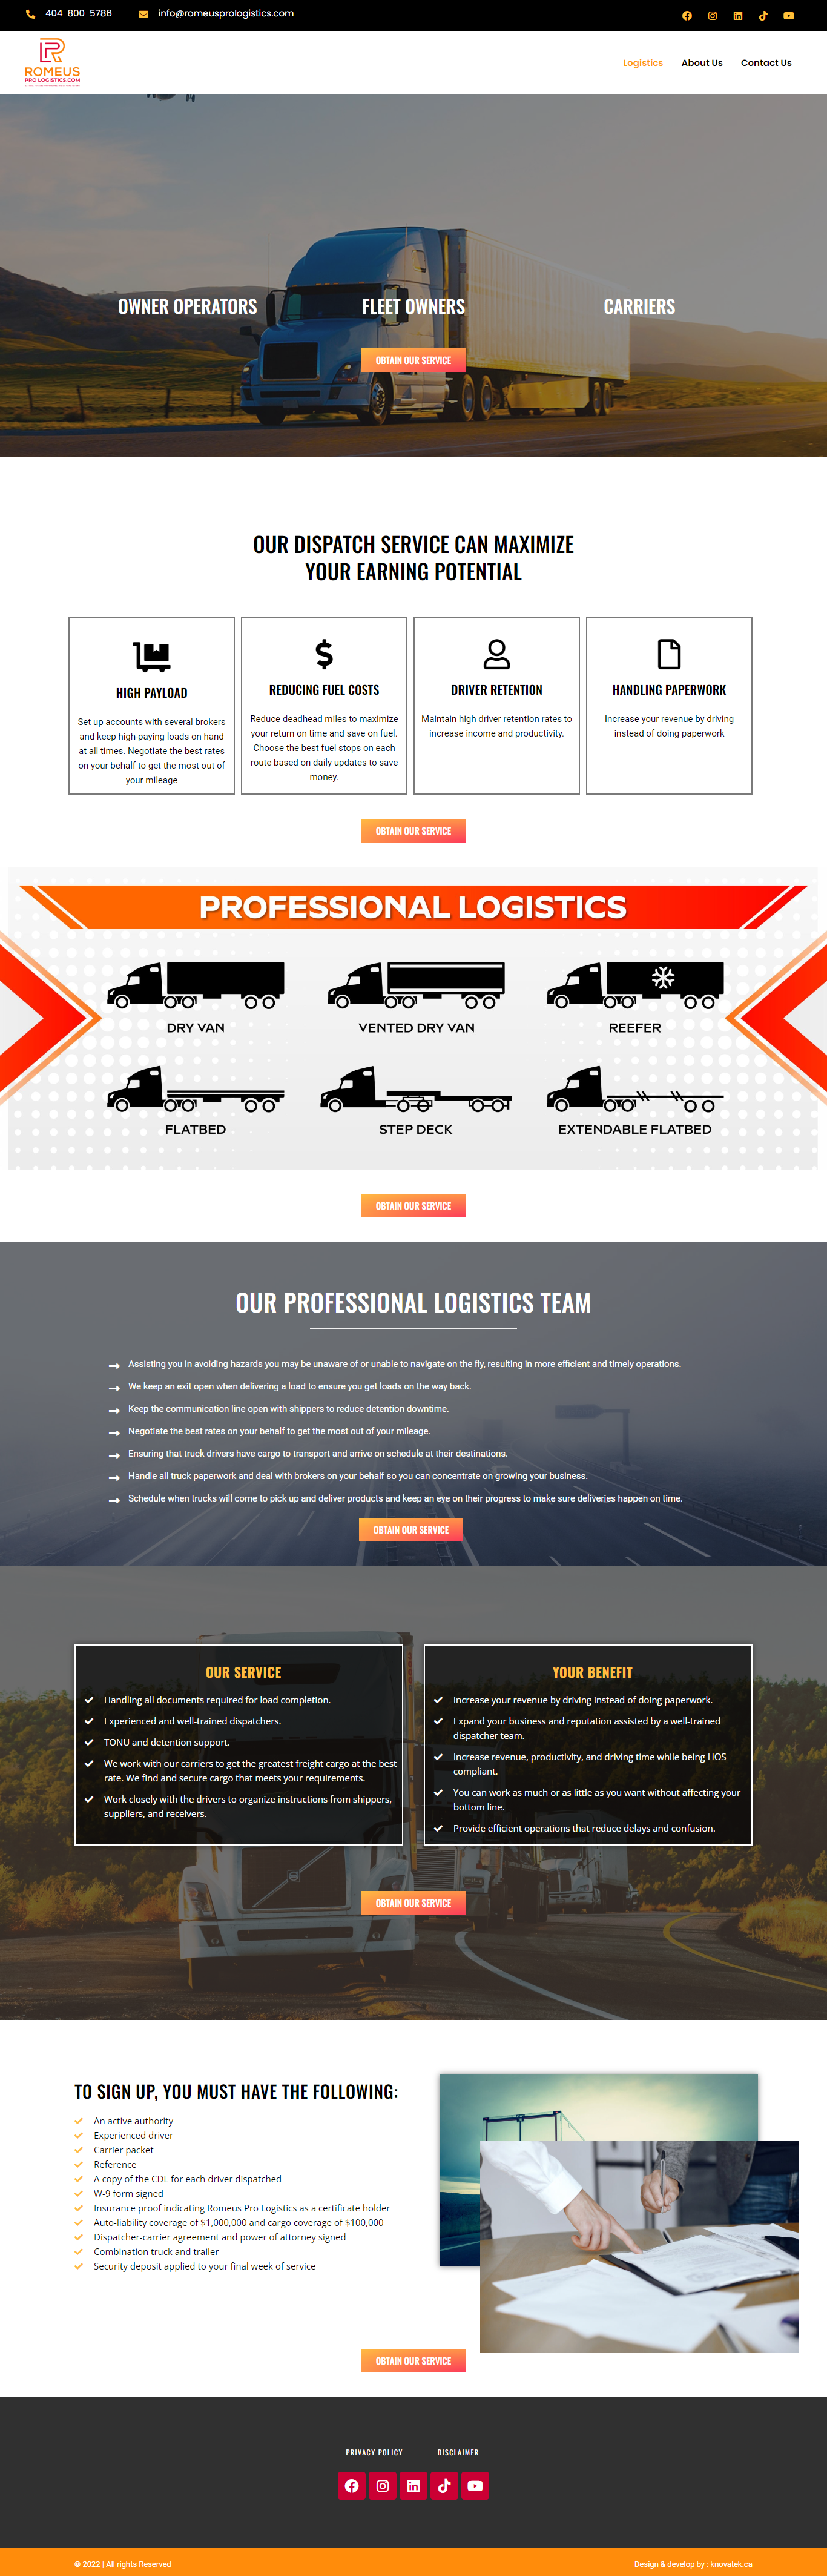 Romeus Pro logistics website design portfolio